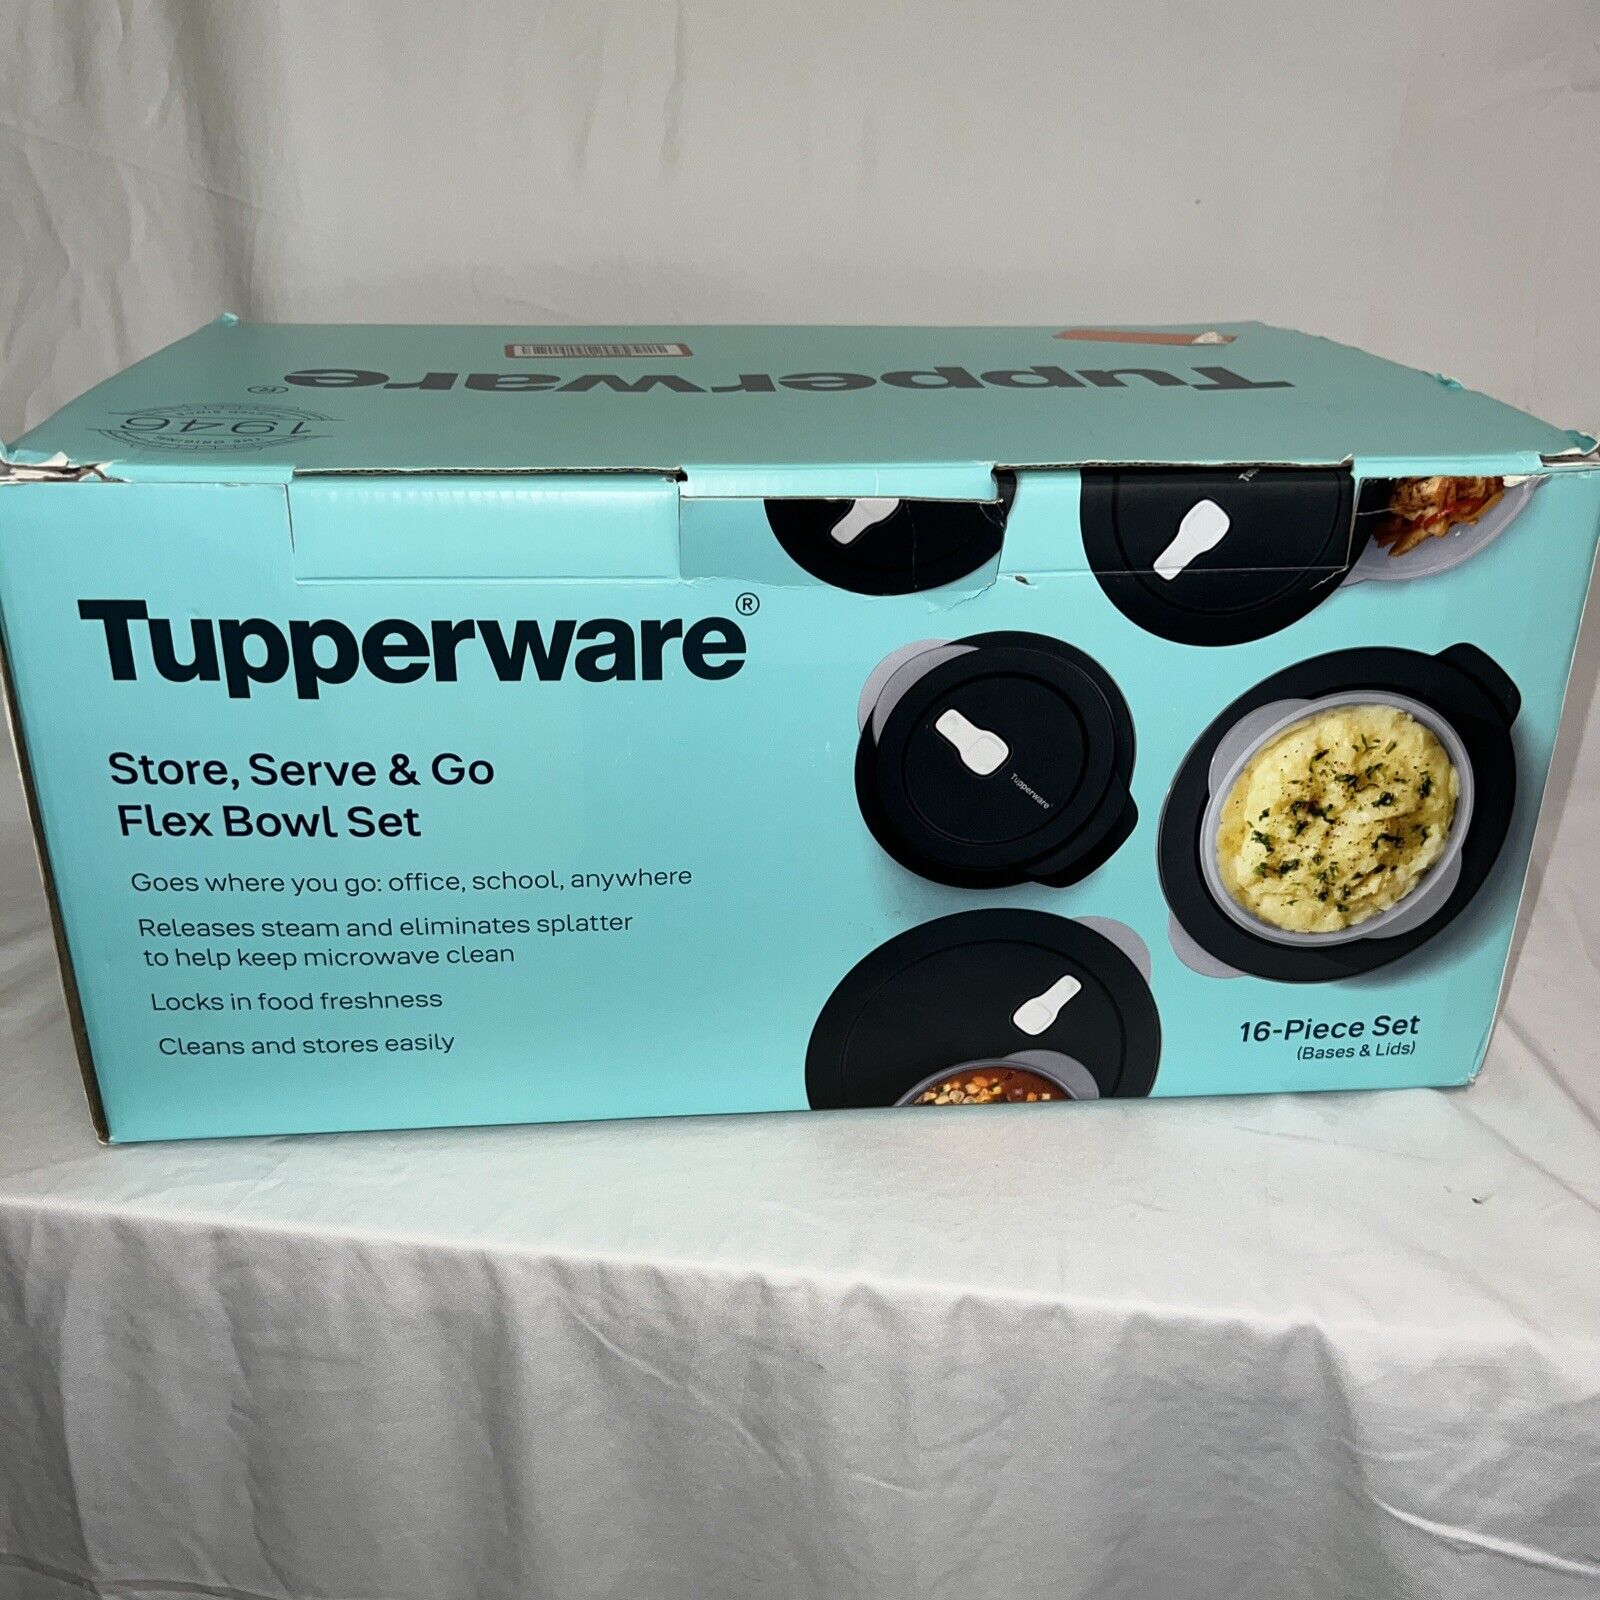 Tupperware Store, Serve & Go Flex Bowl Set 16-piece